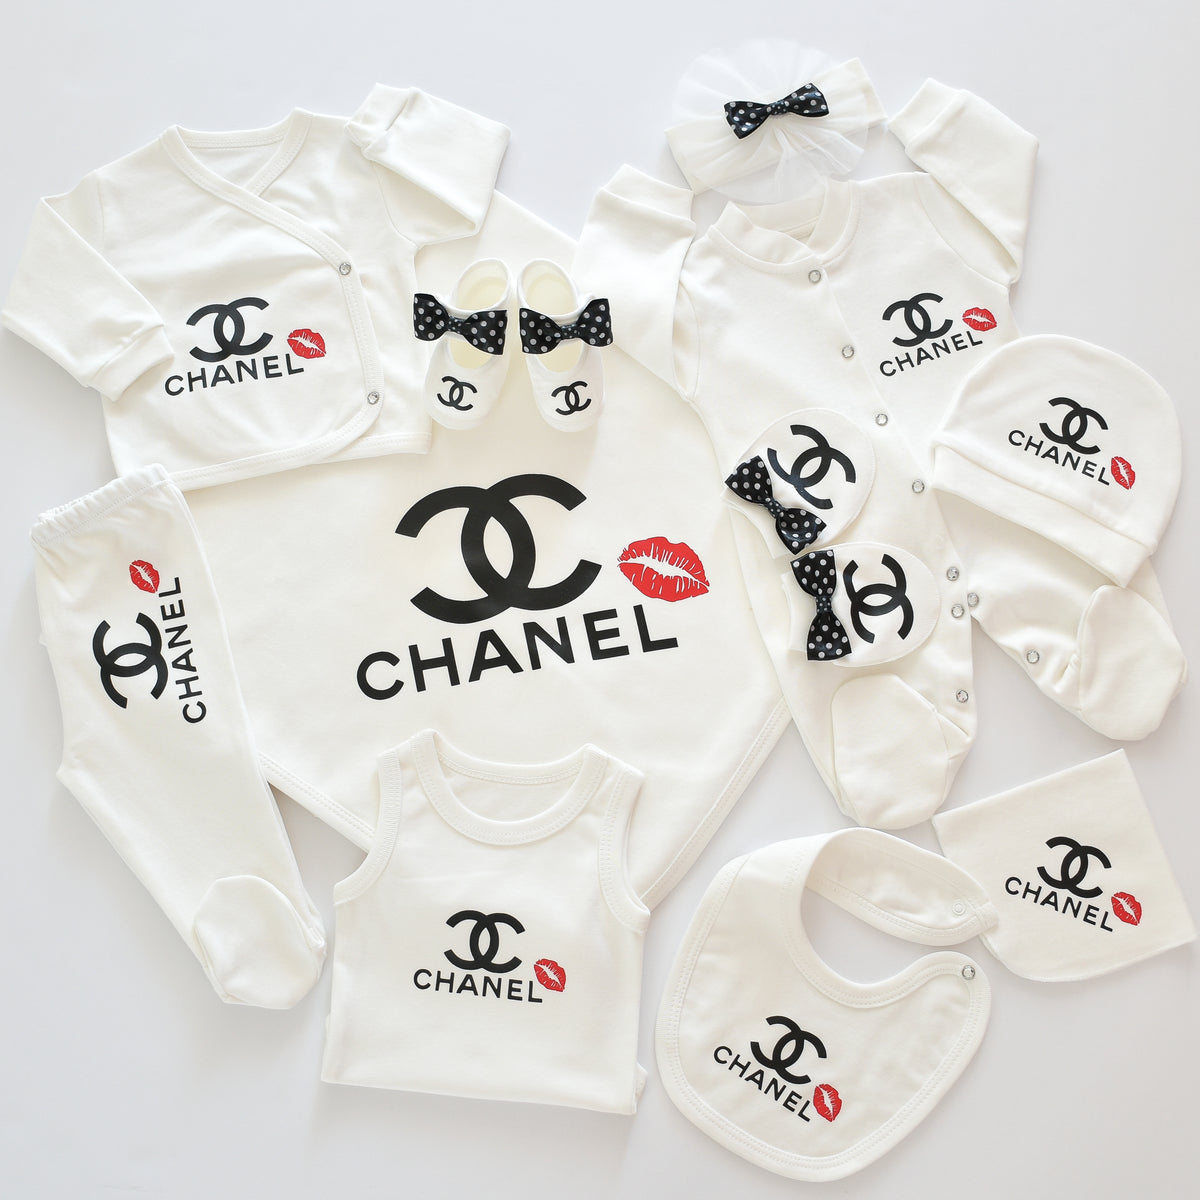 CHANEL Inspired Newborn Baby Set – Tianoor